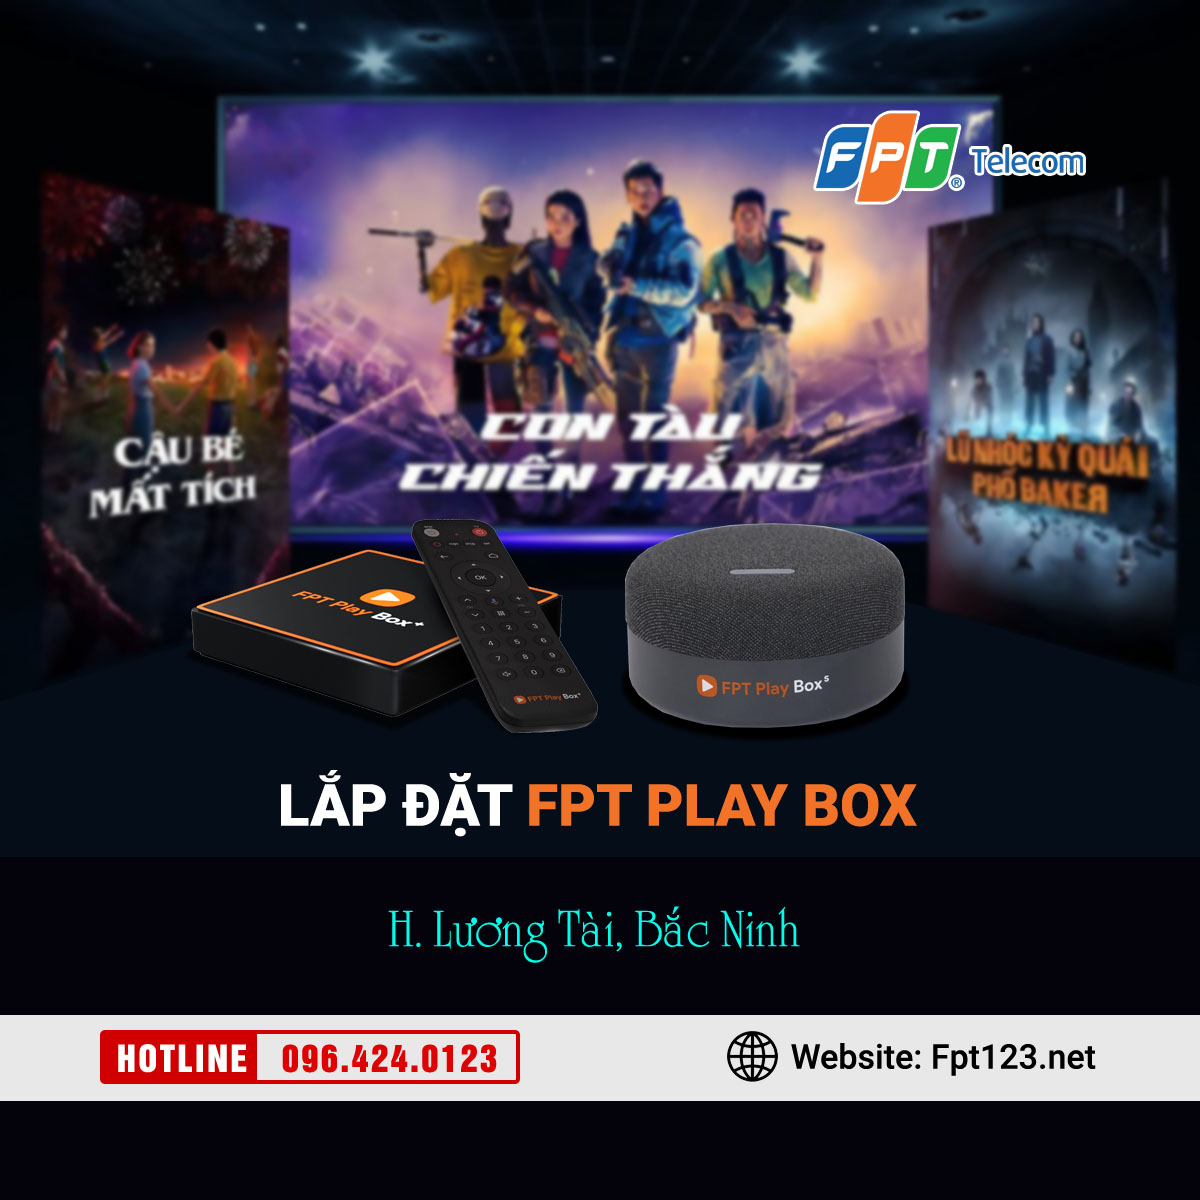 Lắp đặt FPT Play Box tại Lương Tài, Bắc Ninh